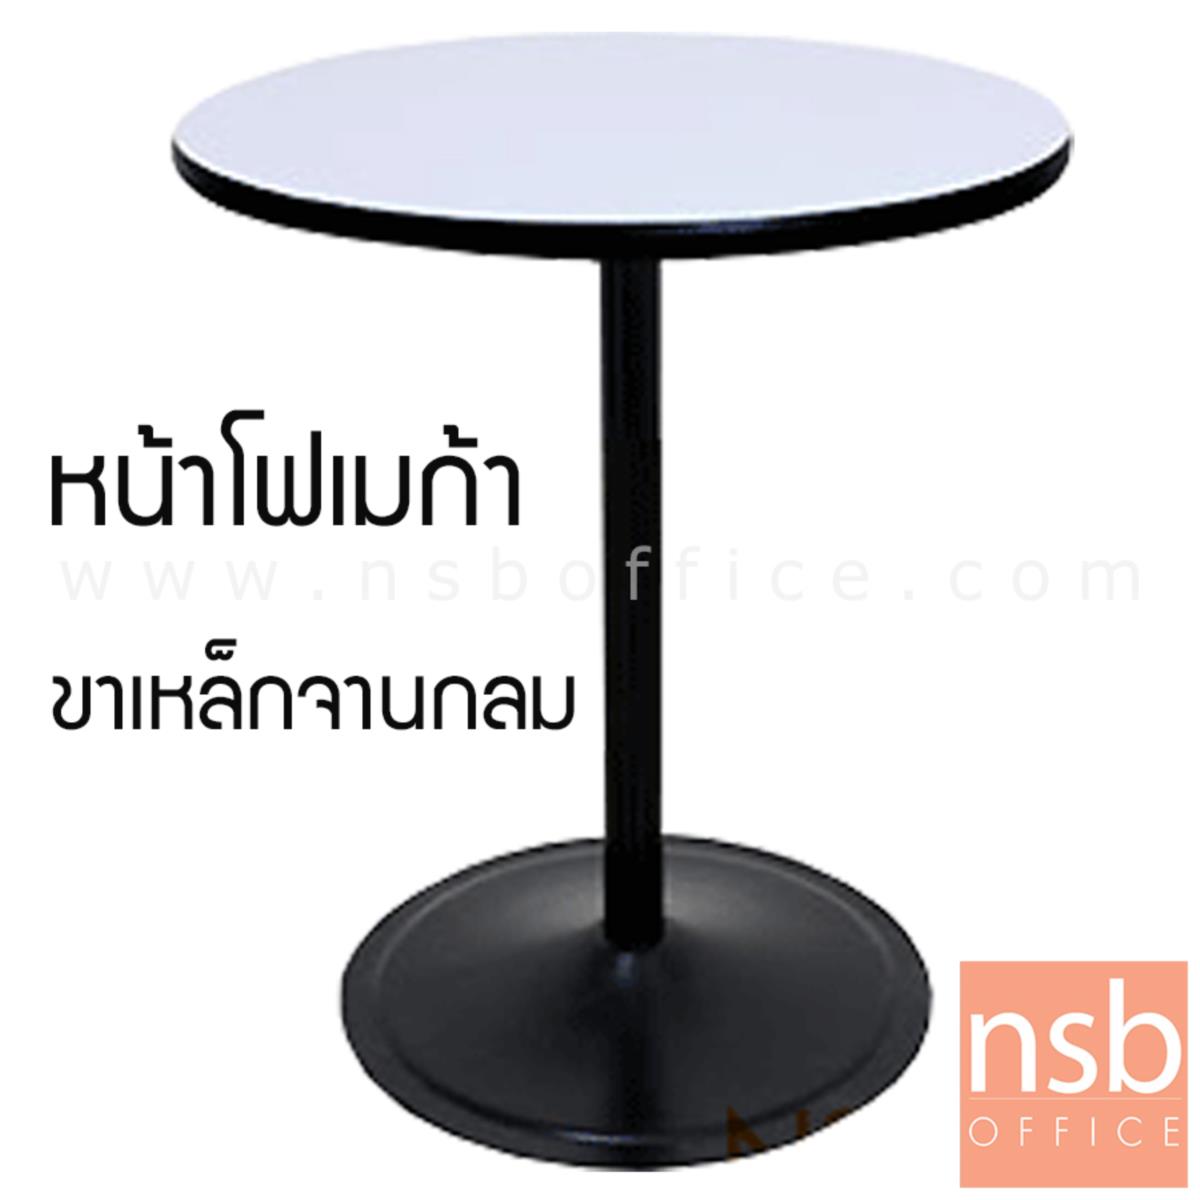 โต๊ะหน้าโฟเมก้าขาว รุ่น Thalia 2 (ธาเลีย 2) ขนาด 60W ,75W ,60Di ,75Di cm.  ขาเหล็กจานกลมสีดำ